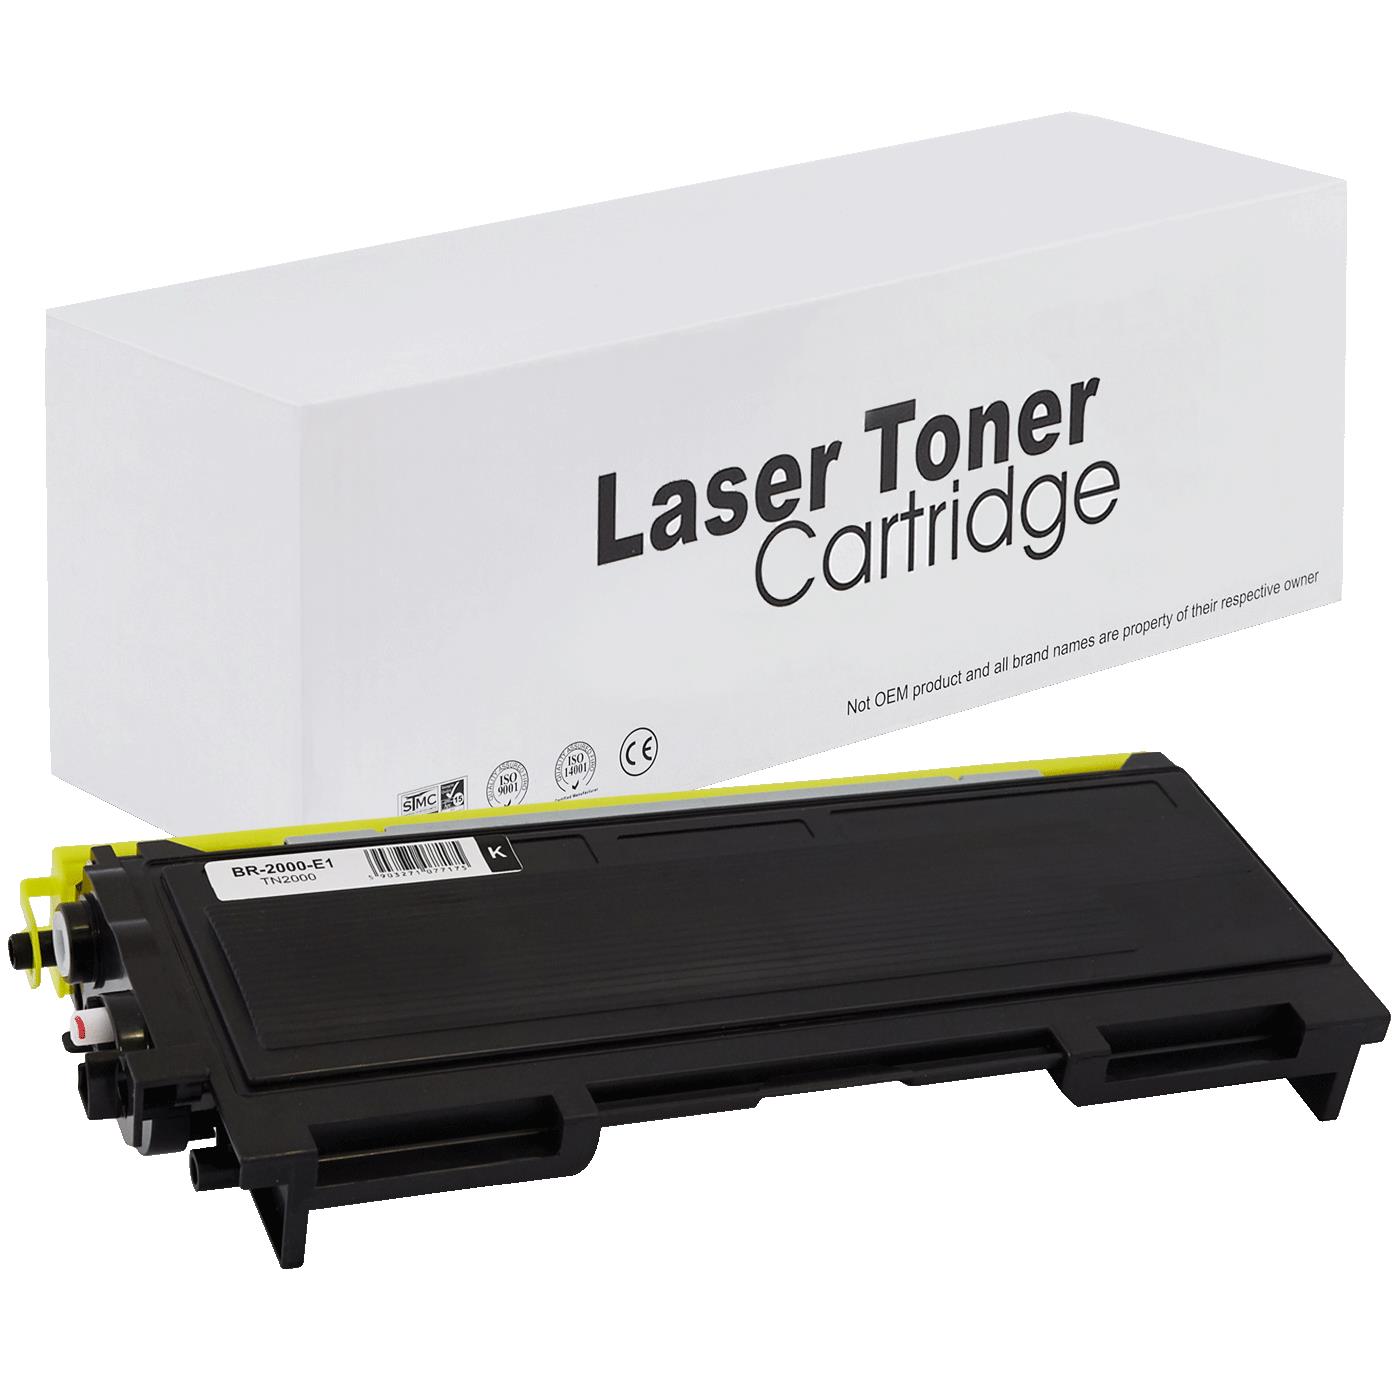 съвместима тонер касета за принтери и печатащи устройства на Brother MFC 7820 Toner BR-2000 | TN2000. Ниски цени, прецизно изпълнение, високо качество.